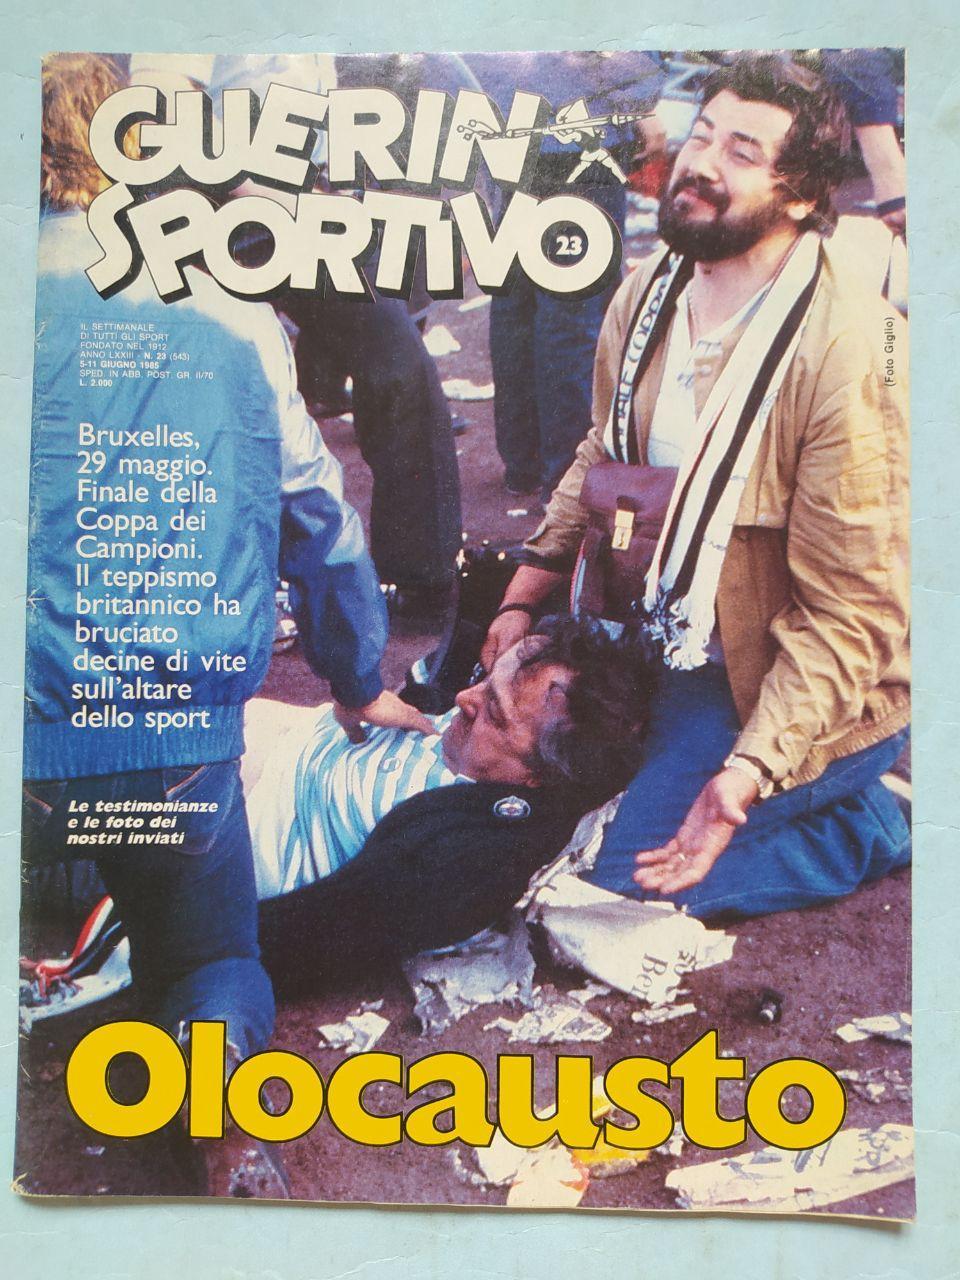 Журнал Гуэрин спортиво Guerin Sportivo 23 - 1985 Эйзельская трагедия 29.05.1985